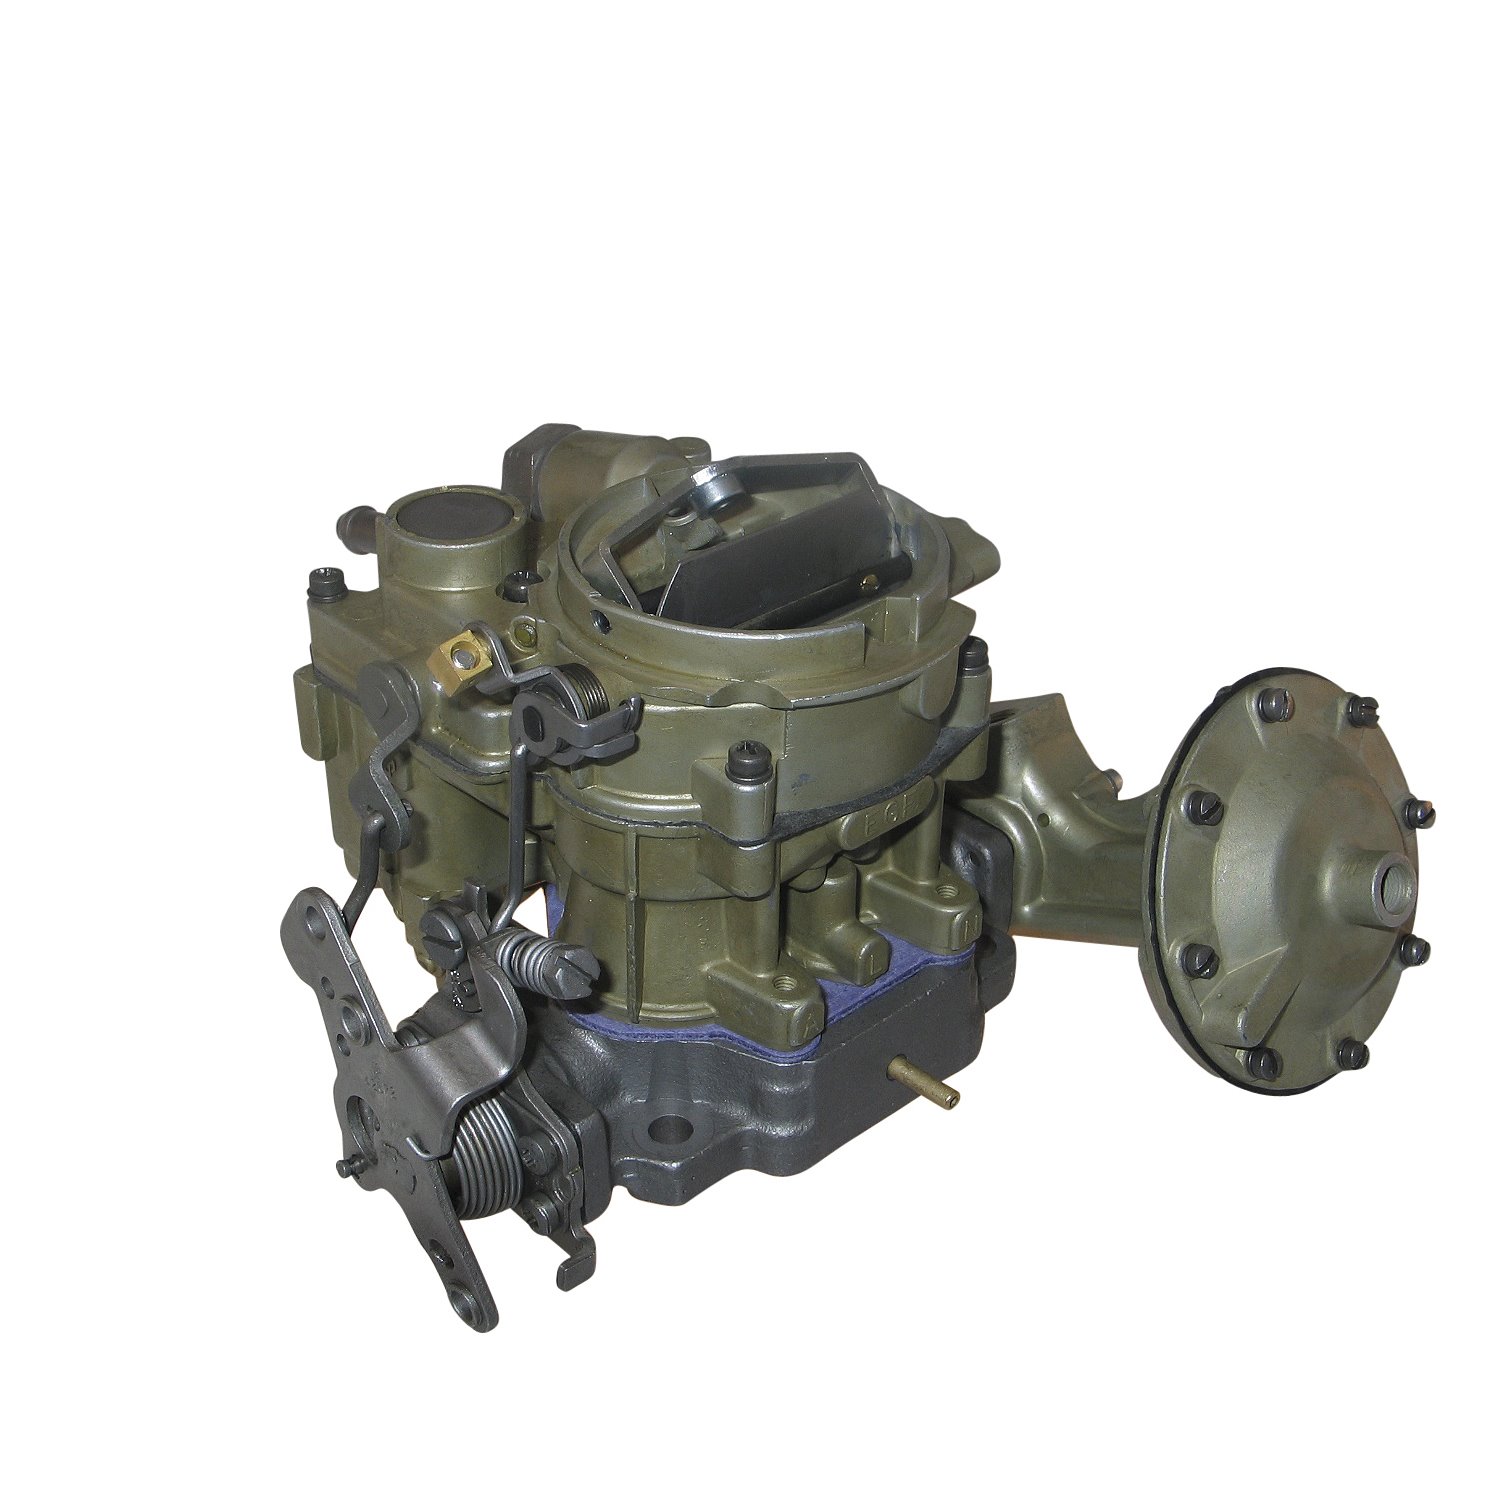 3-3848 Rochester Remanufactured Carburetor, 2G, Vac. Gov. & Solenoid on Gov.-Style